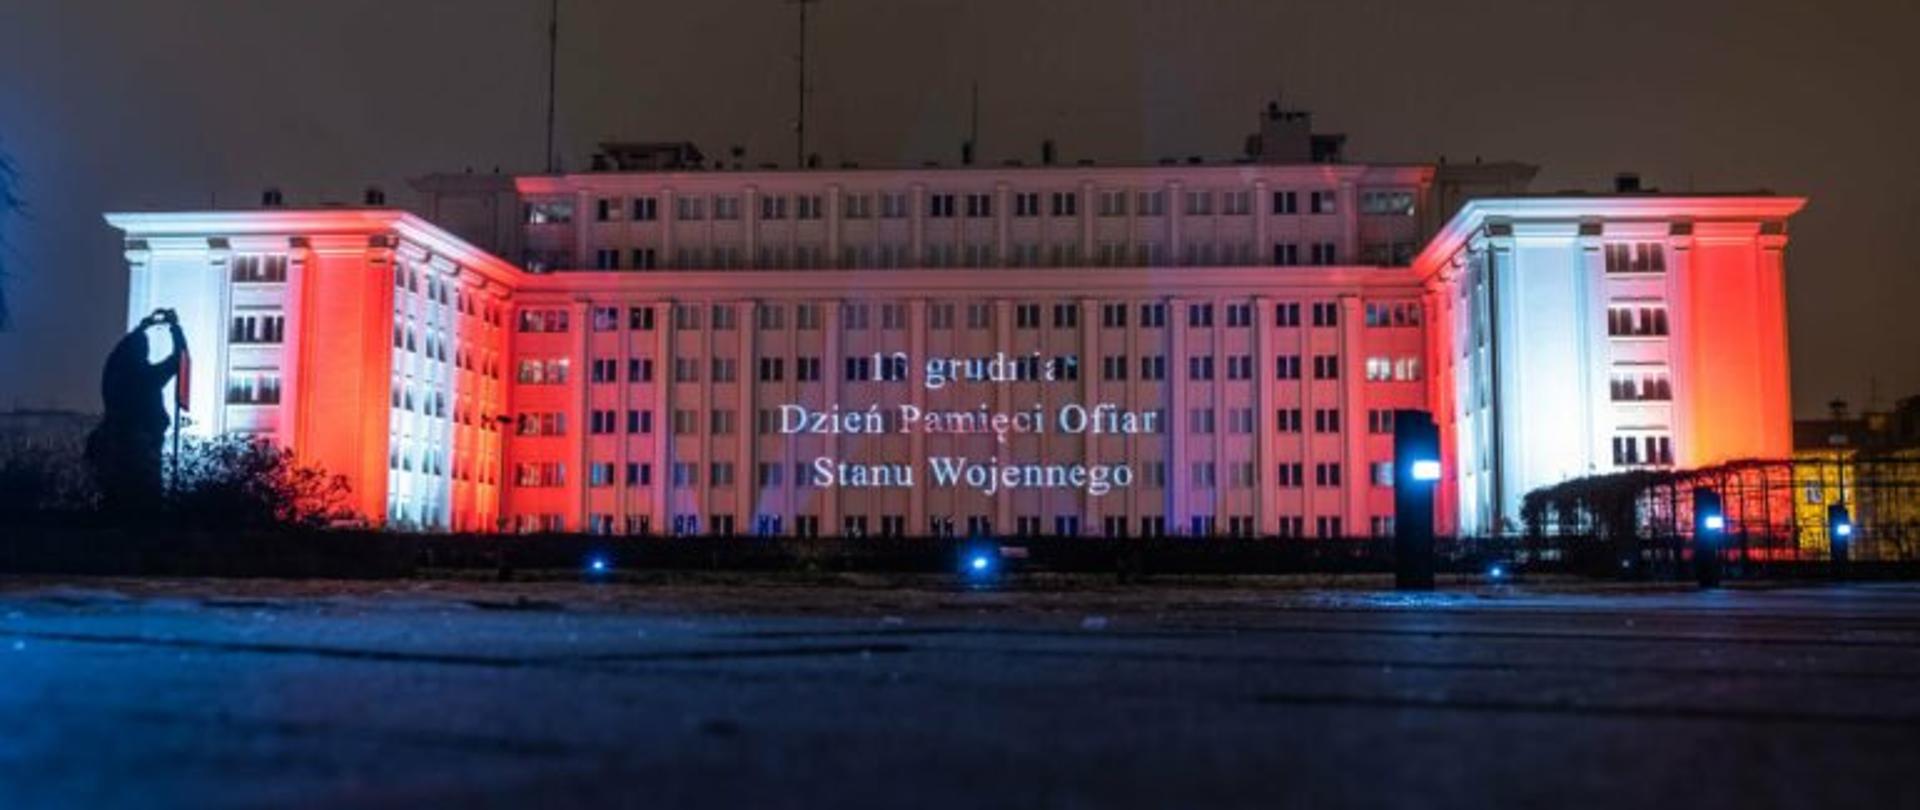 Budynek Podkarpackiego Urzędu Wojewódzkiego w Rzeszowie , na nim biało-czerwona iluminacja i napis 13 grudnia Dzień Pamięci Ofiar Stanu Wojennego